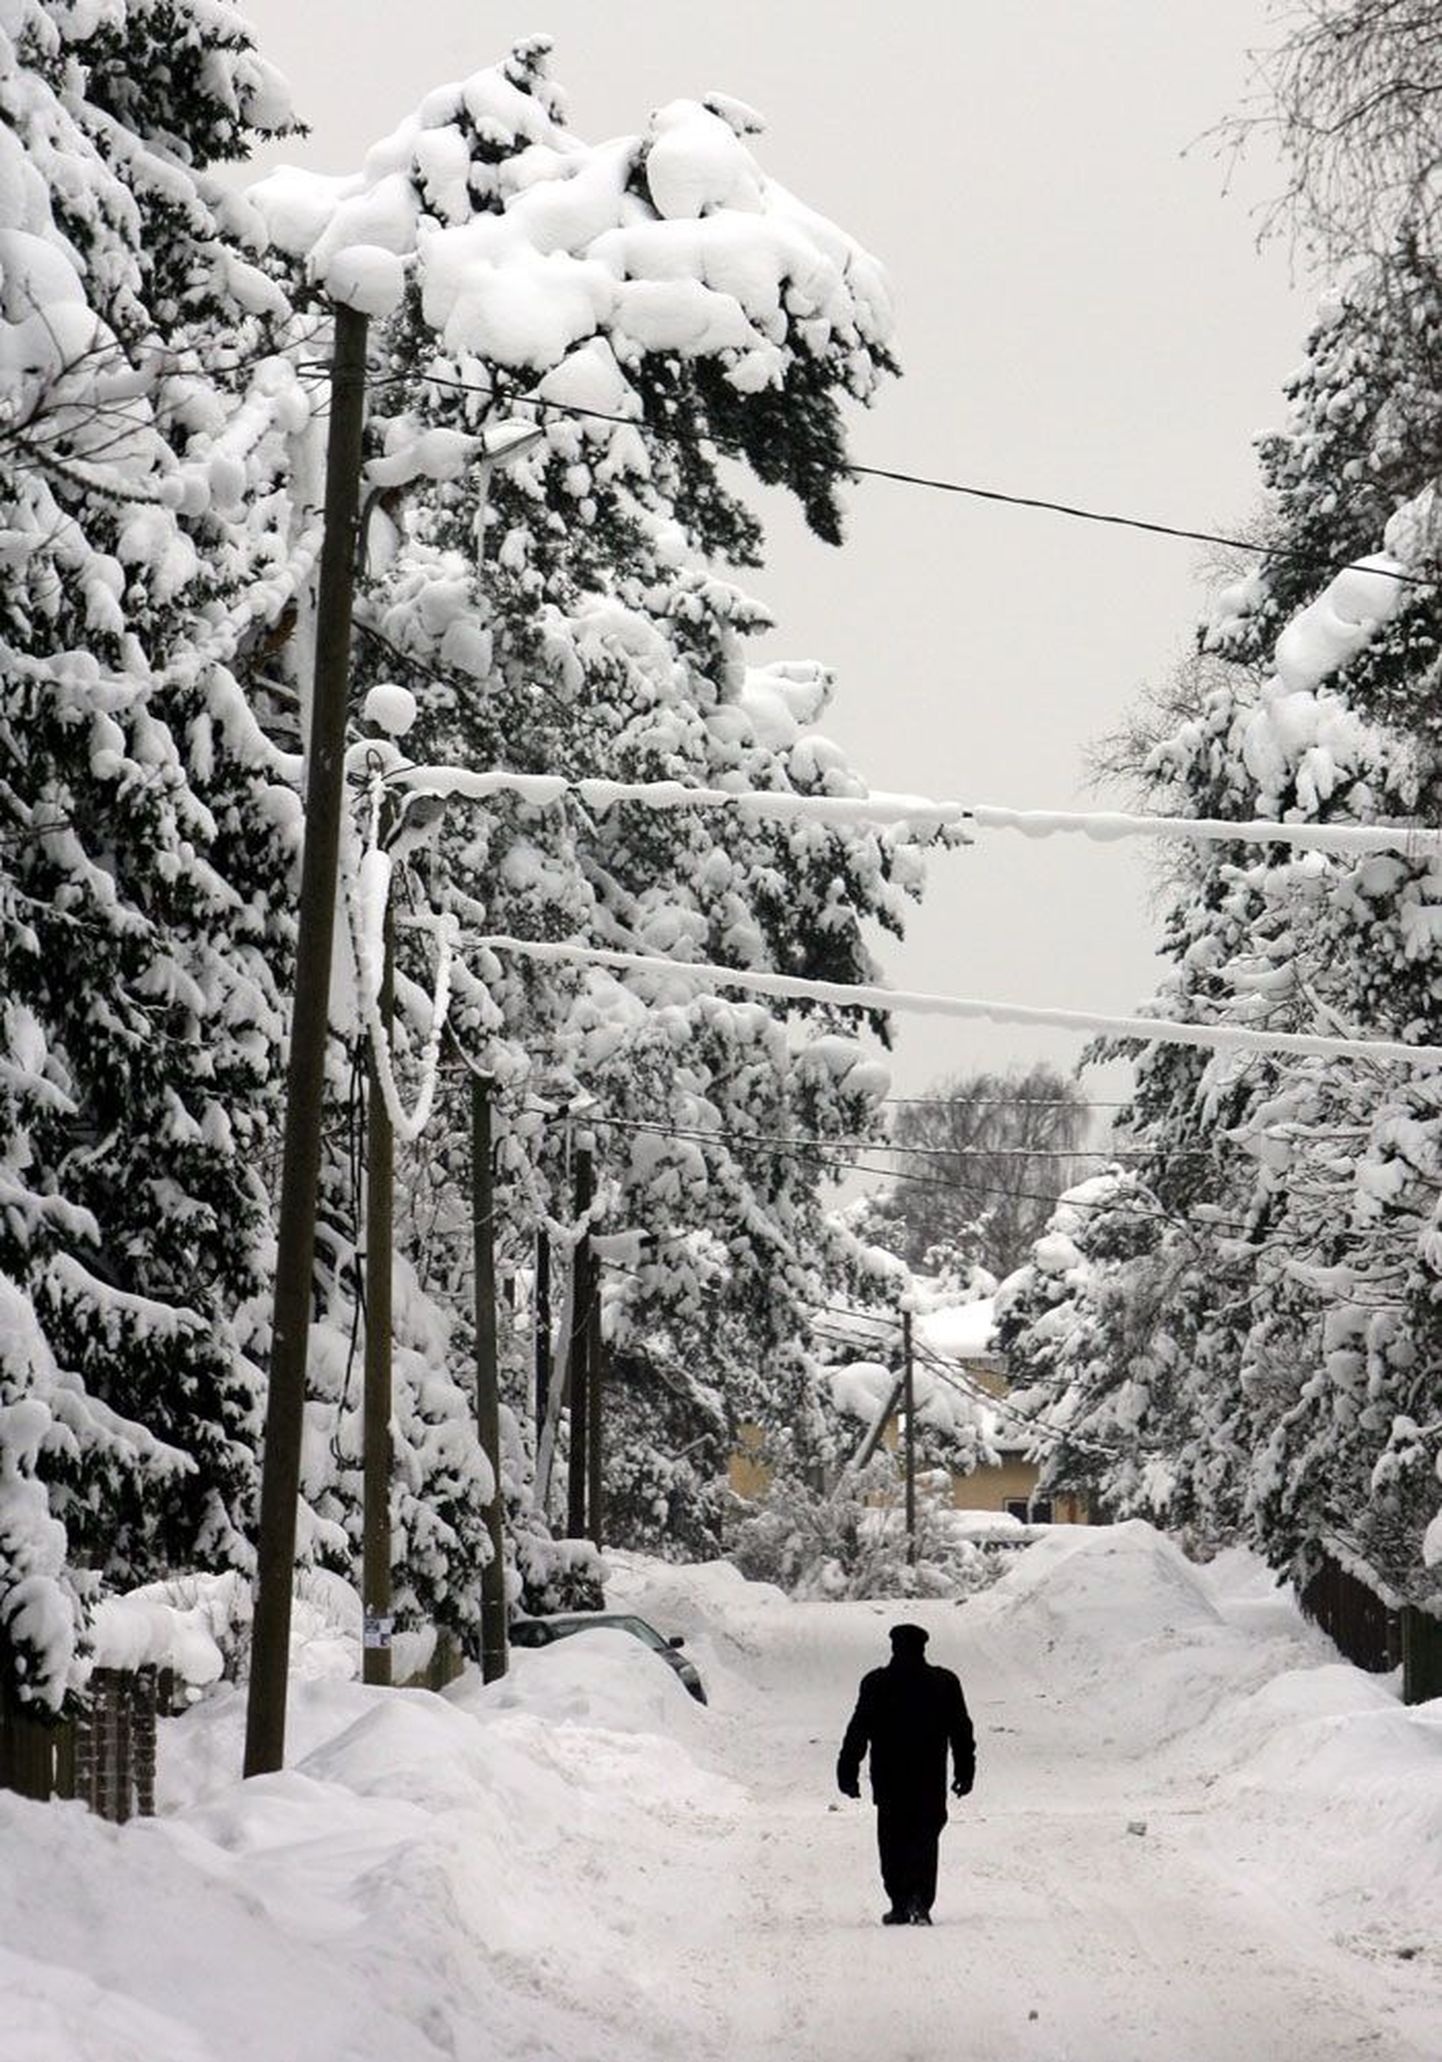 Eile päeval oli see väike tänav Tallinnas Nõmmel sõidukite ja jalakäijate liikumiseks kenasti puhtaks lükatud, ent puid ja elektriliine polnud keegi veel lumest raputama asunud.